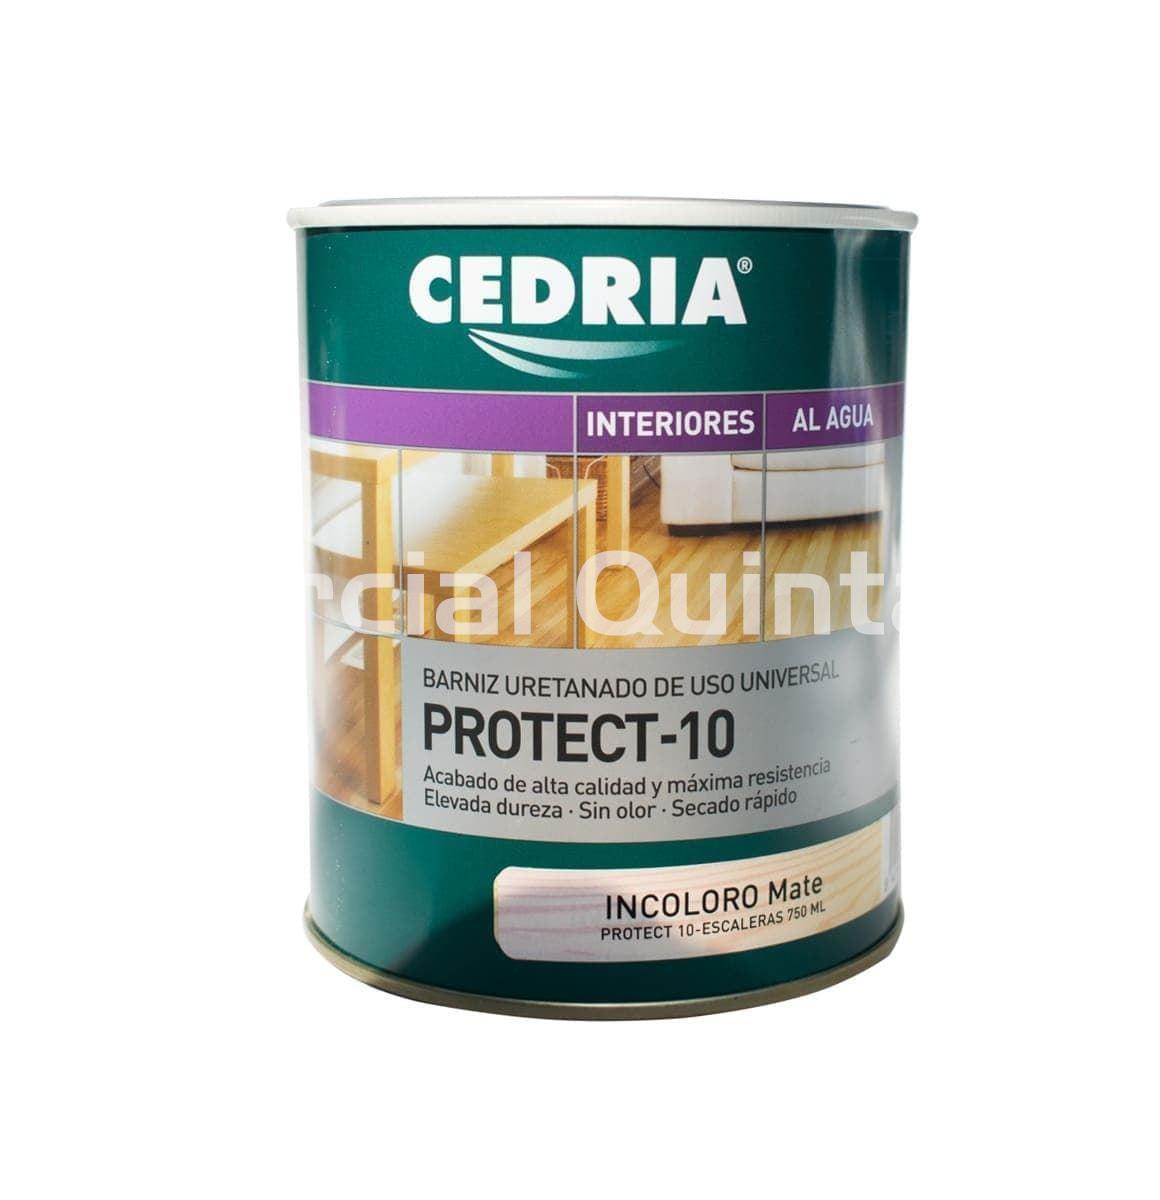 CEDRIA Protec-10 - Imagen 1